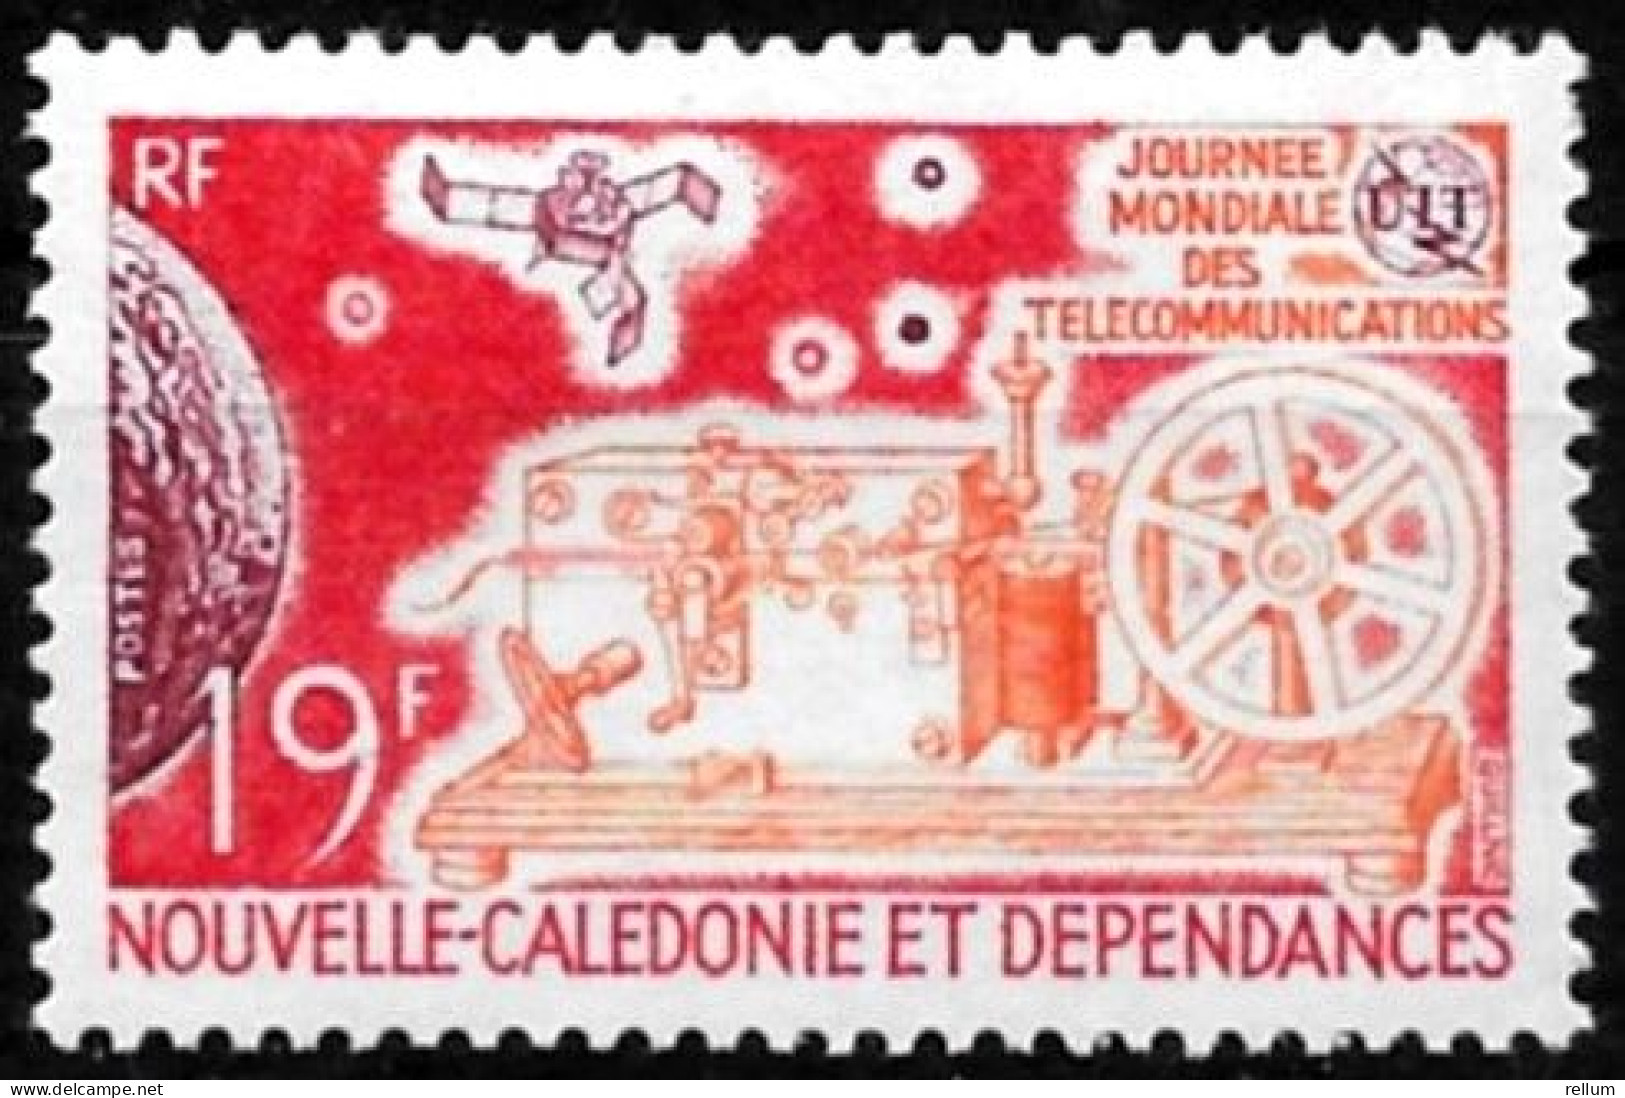 Nouvelle Calédonie 1971 - Yvert N° 374 - Michel N° 502 ** - Nuevos